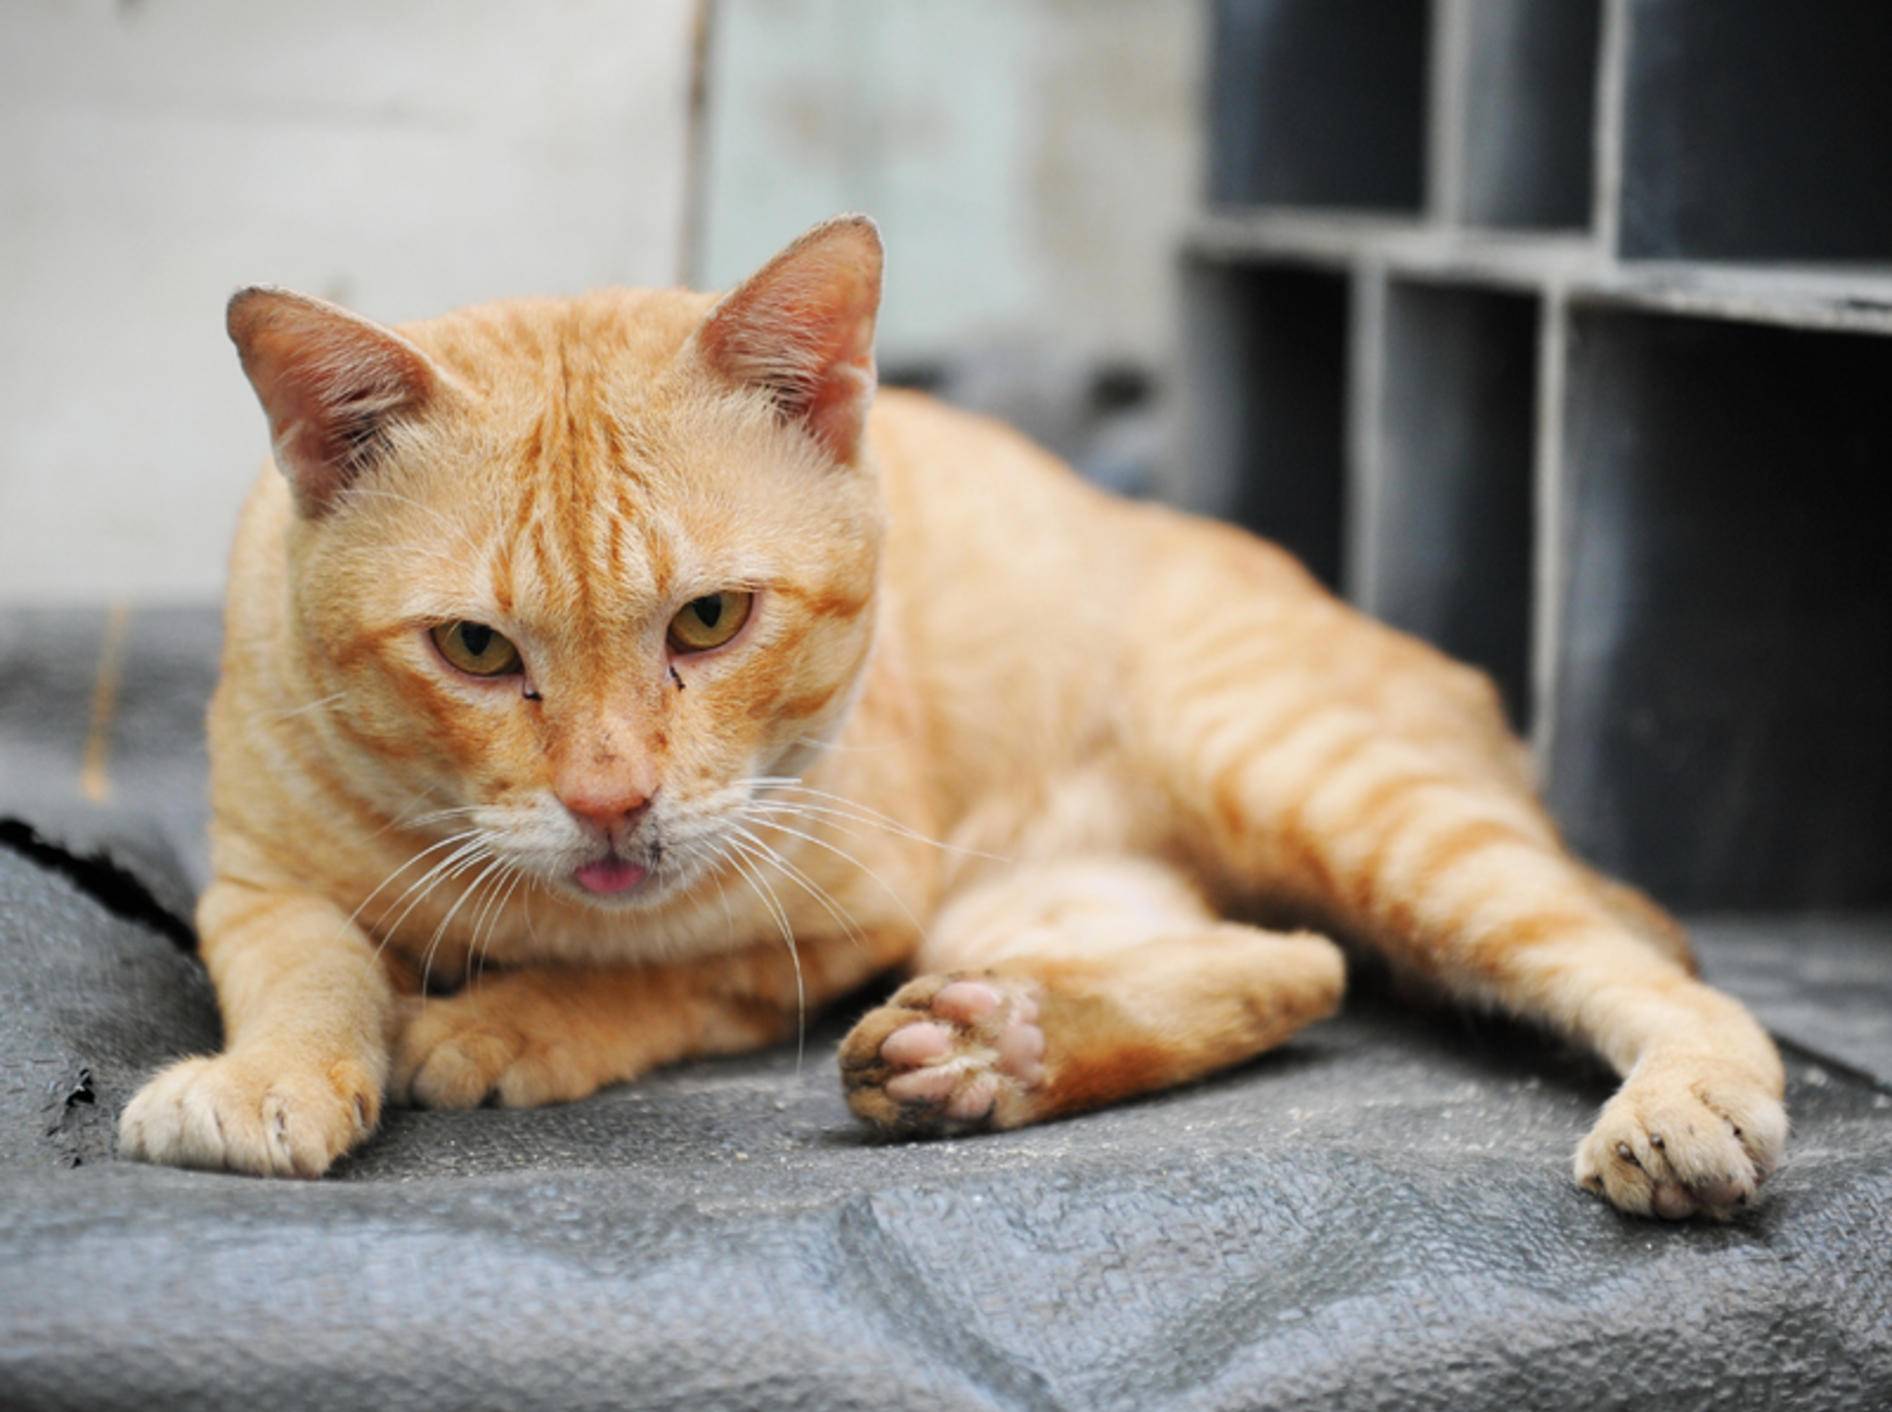 Husten bei Katzen sollten Sie vom Tierarzt untersuchen lassen – Shutterstock / 1000 Words